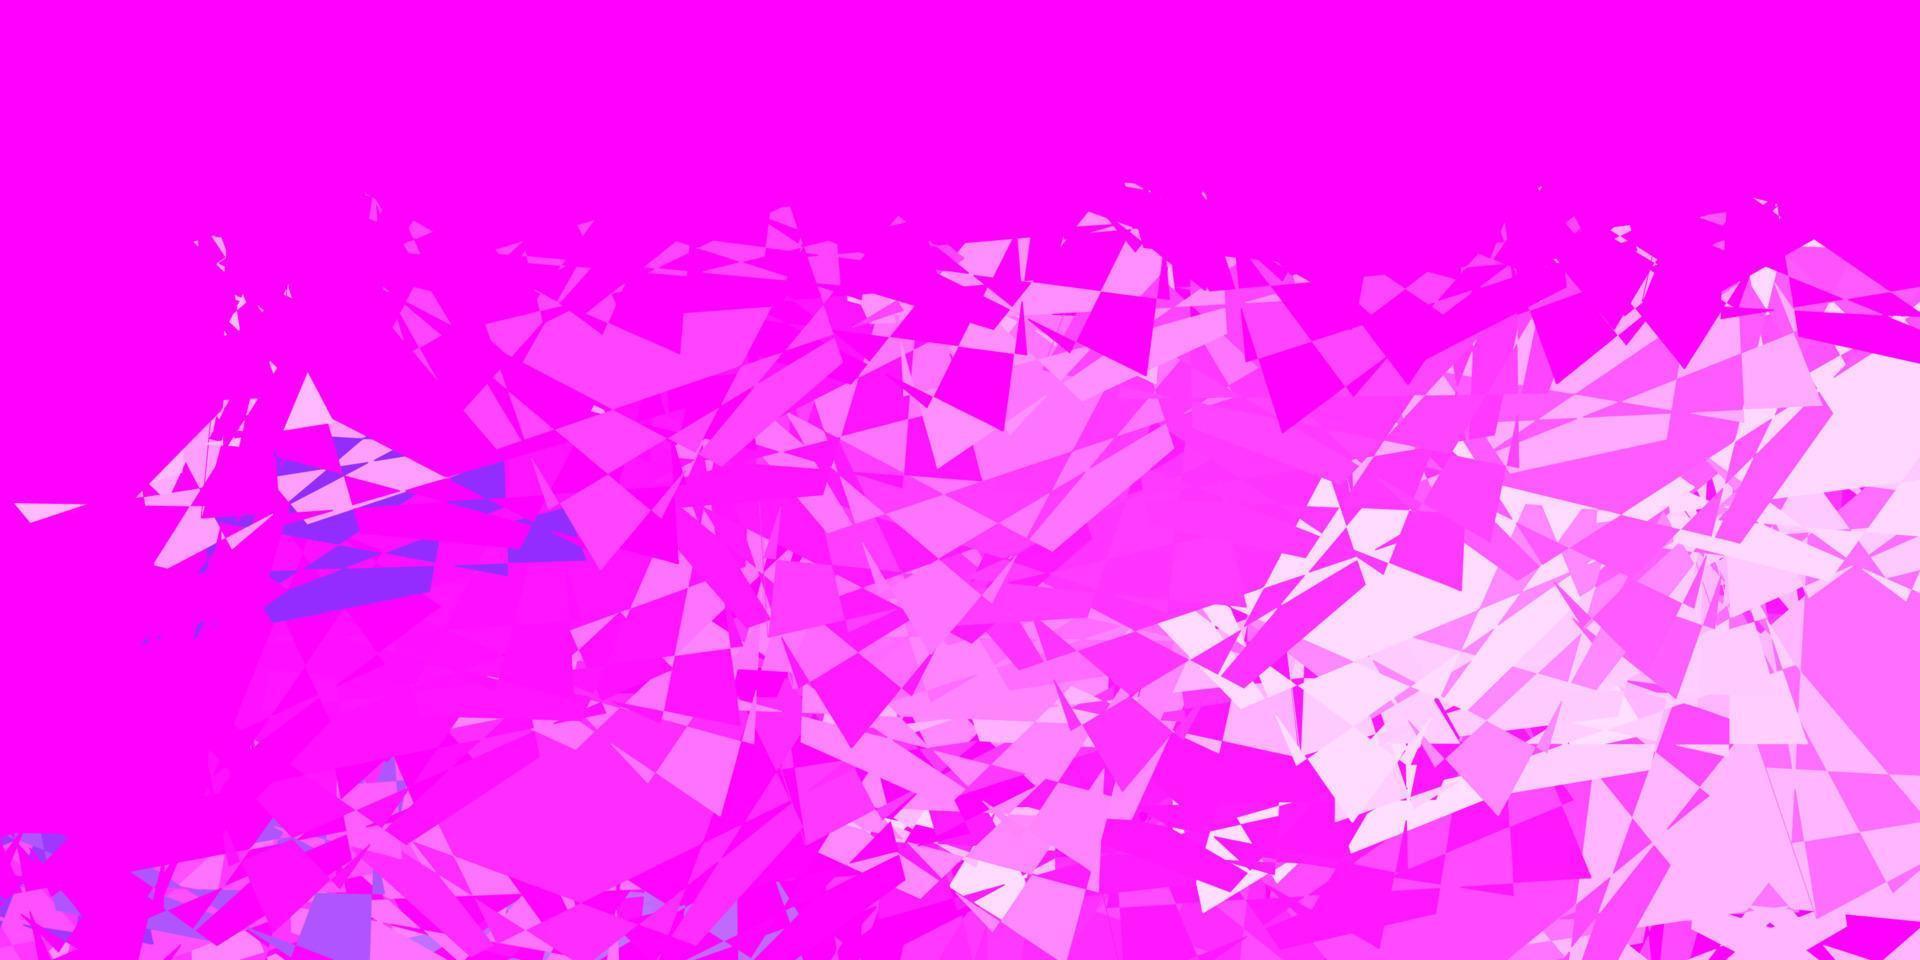 pano de fundo vector roxo, rosa claro com triângulos, linhas.